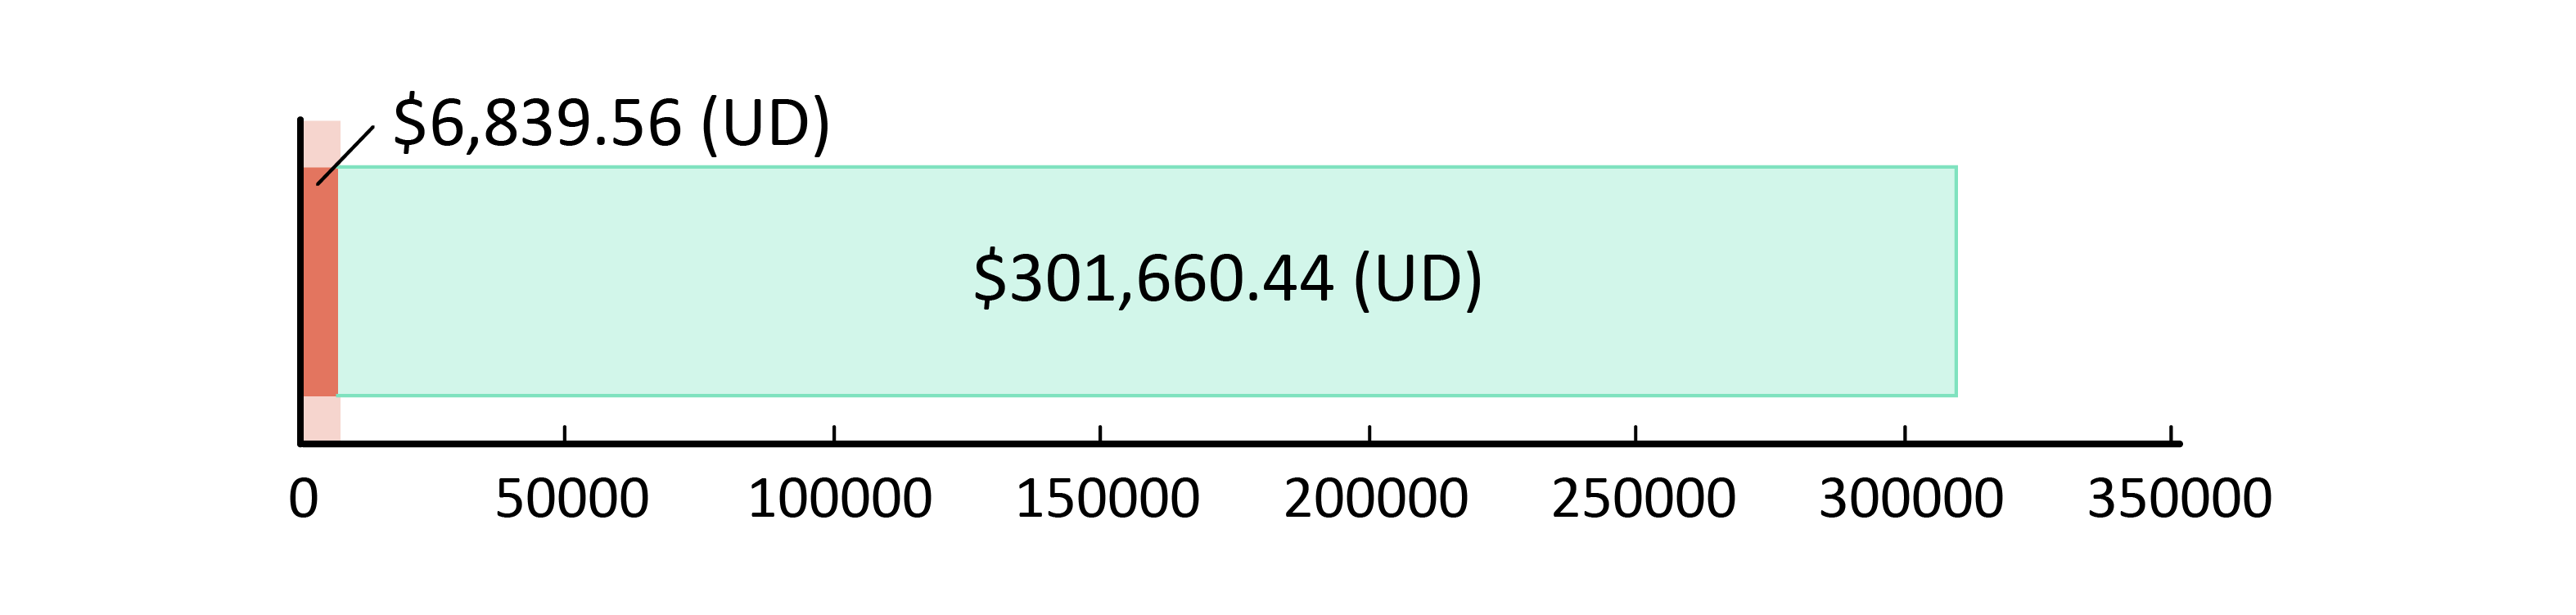 $6,839.56 (UD) wedi’i cyfrannu; US$301,660.44 ar ôl